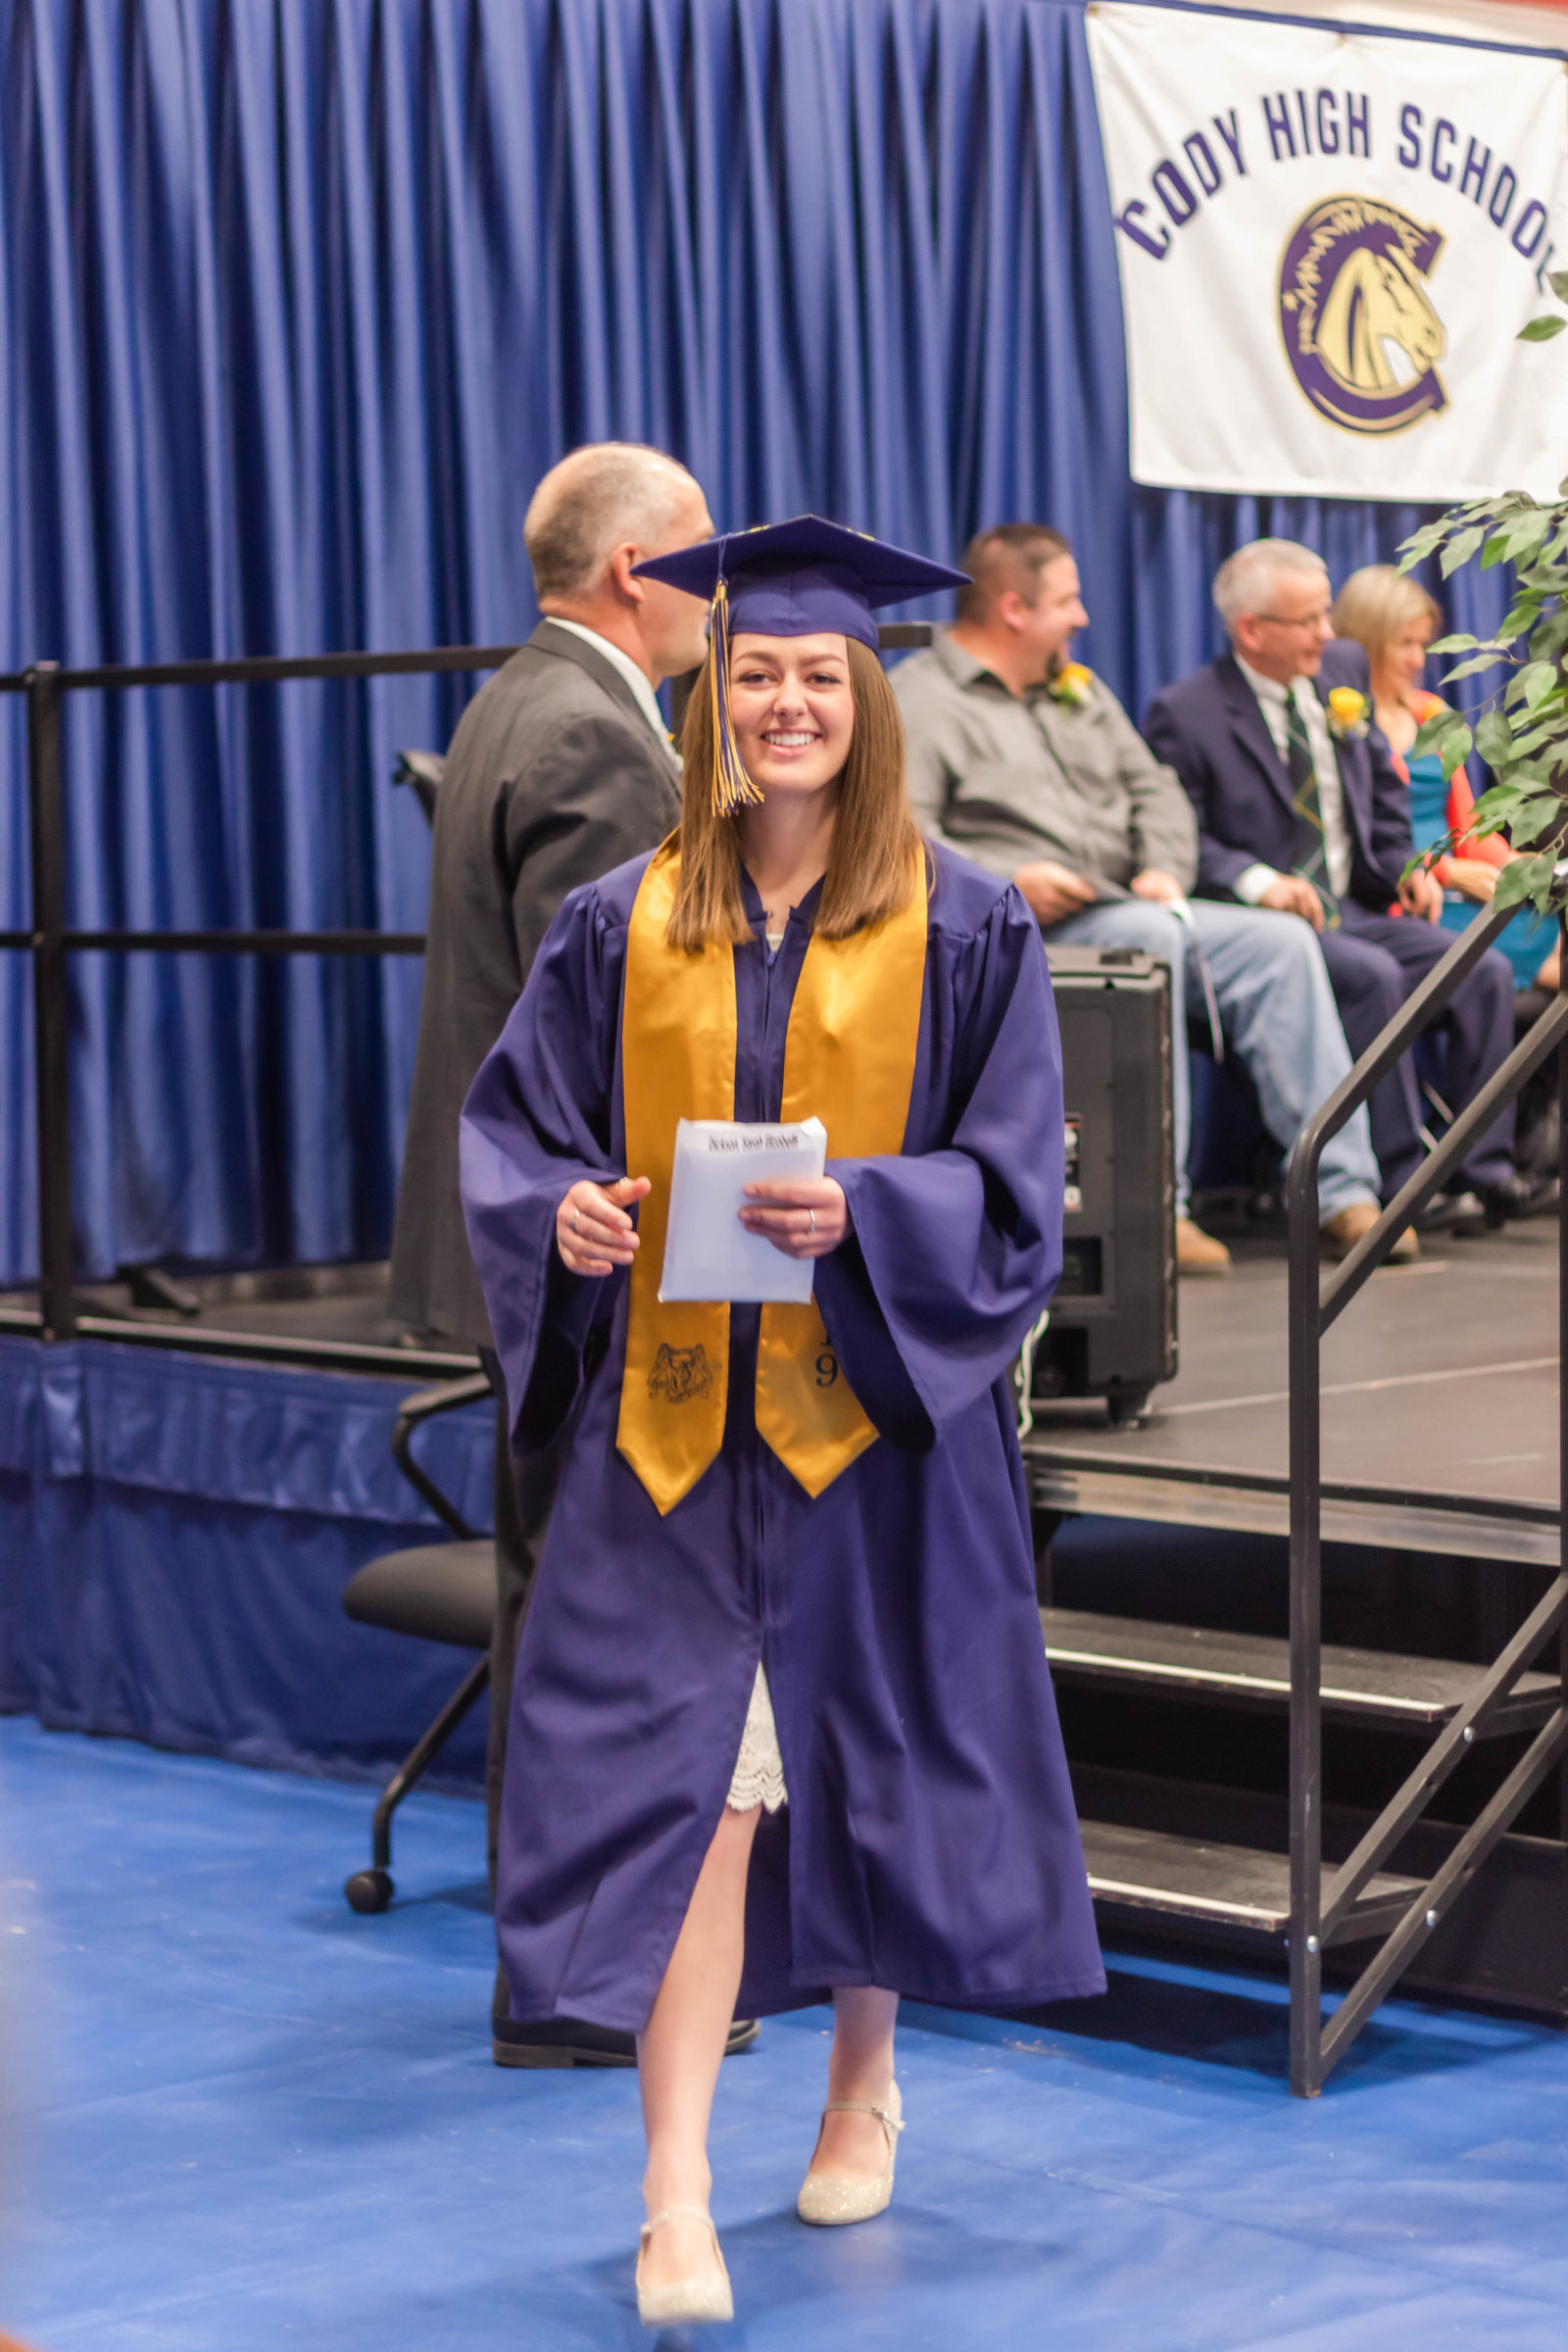 Sarah Graduation 2019-30